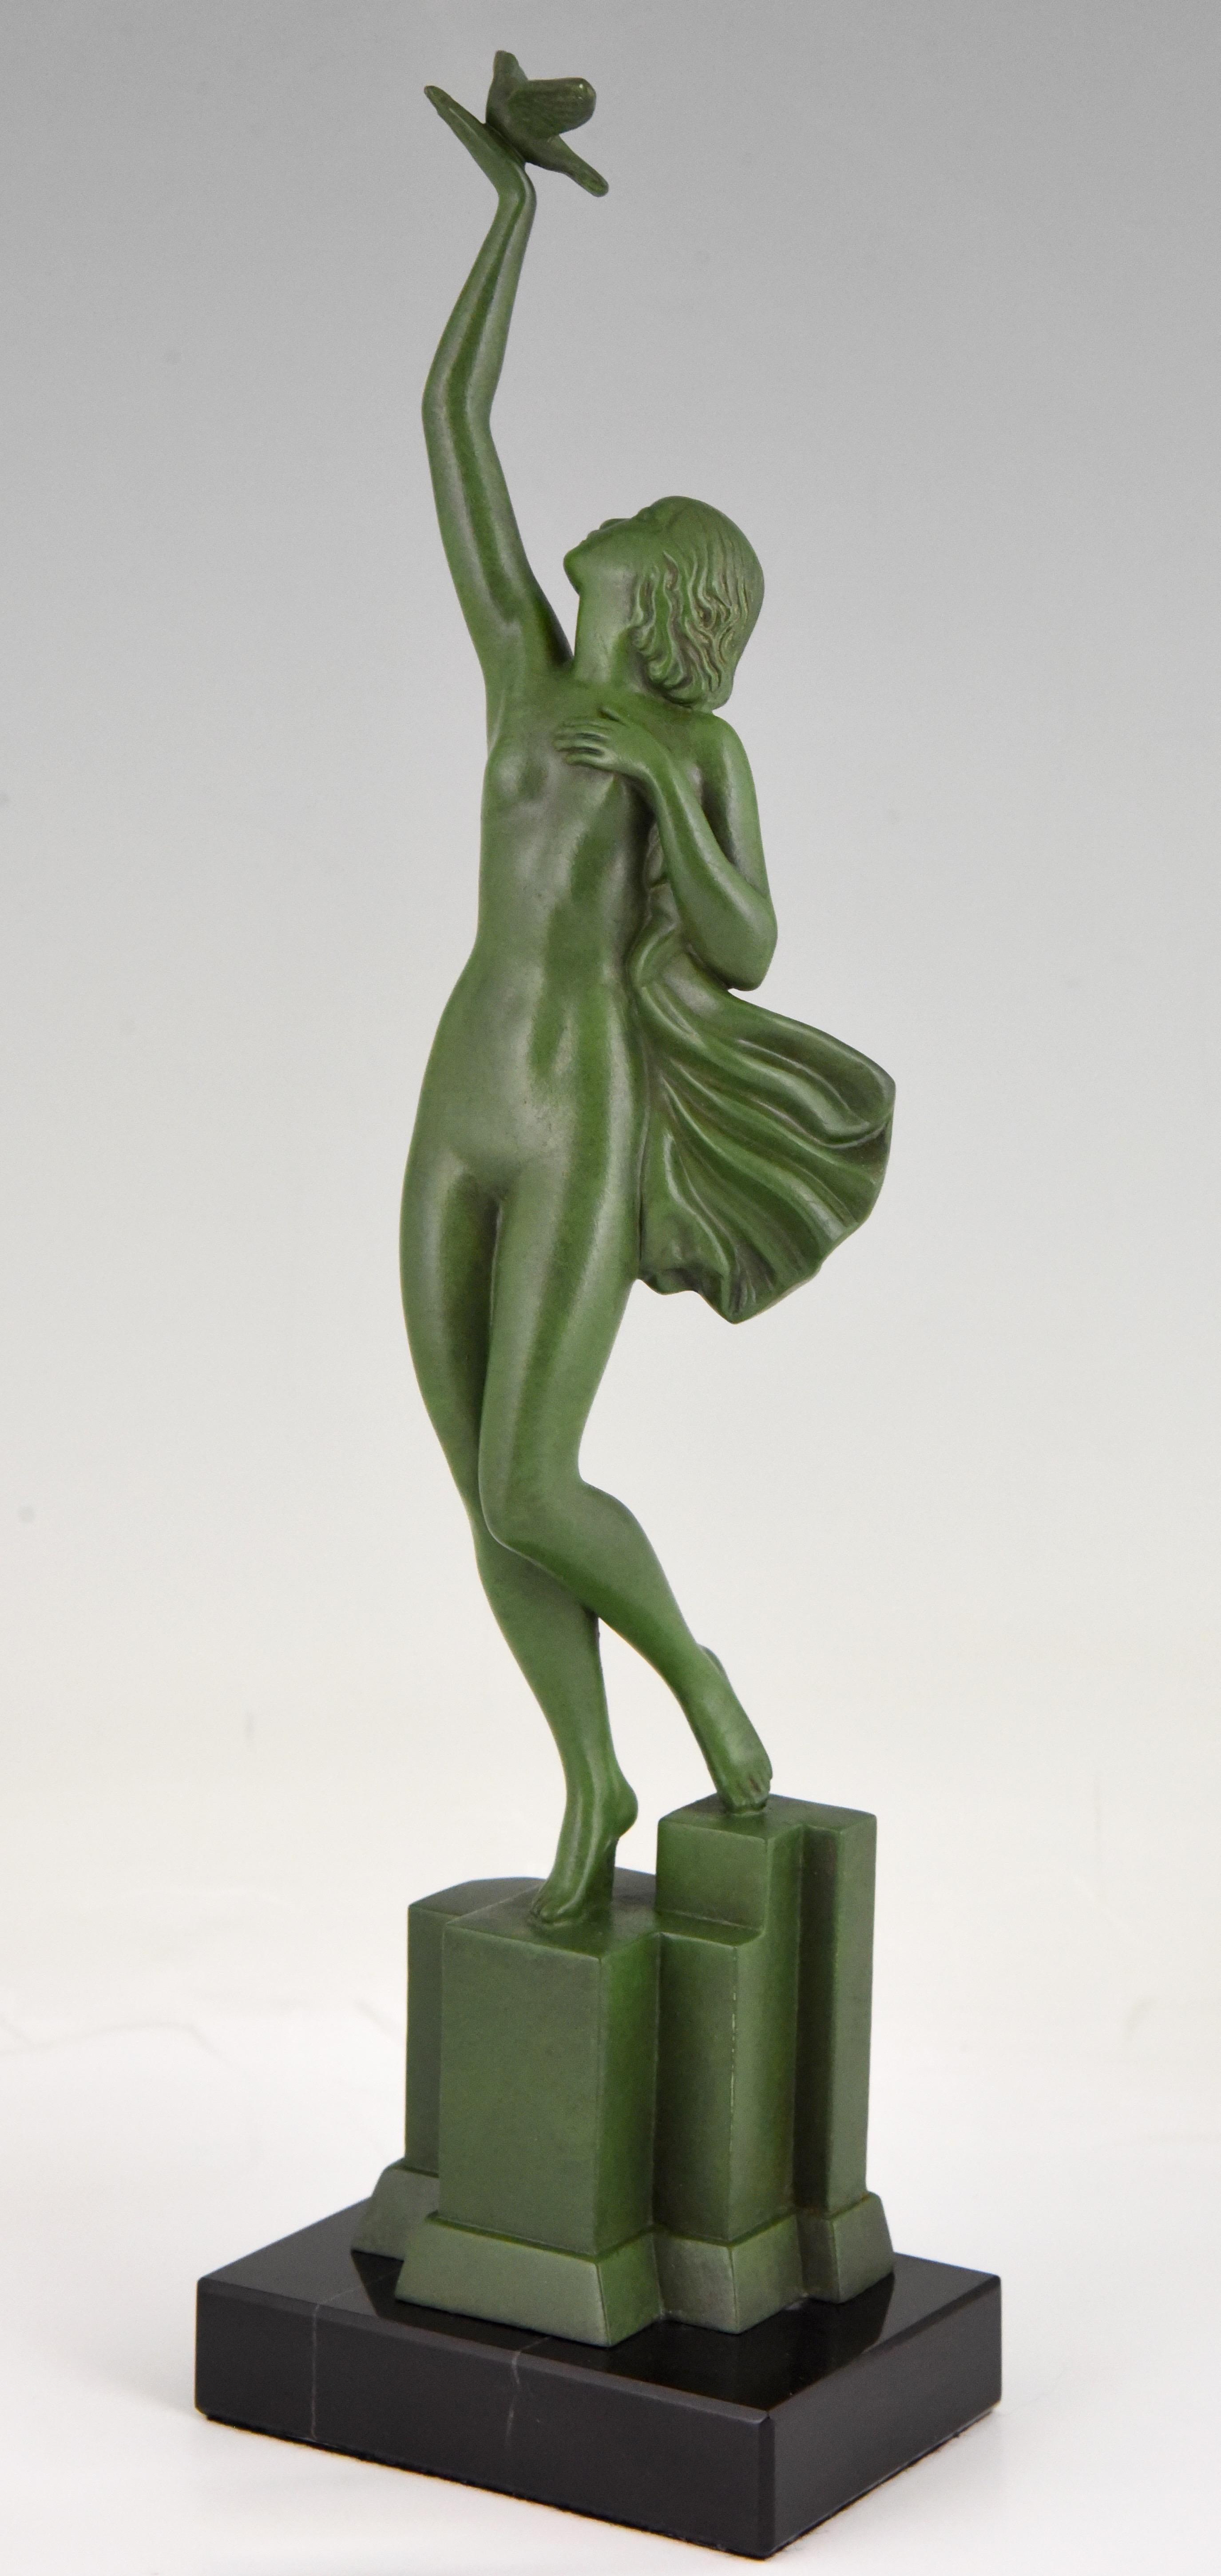 Botschaft der Liebe, Art Deco Skulptur eines Aktes, der eine Taube hält, signiert Fayral, Pseudonym von Pierre Le Faguays. Frankreich 1930.
Patiniertes Kunstmetall auf schwarzem Marmorsockel. 

Literatur:
